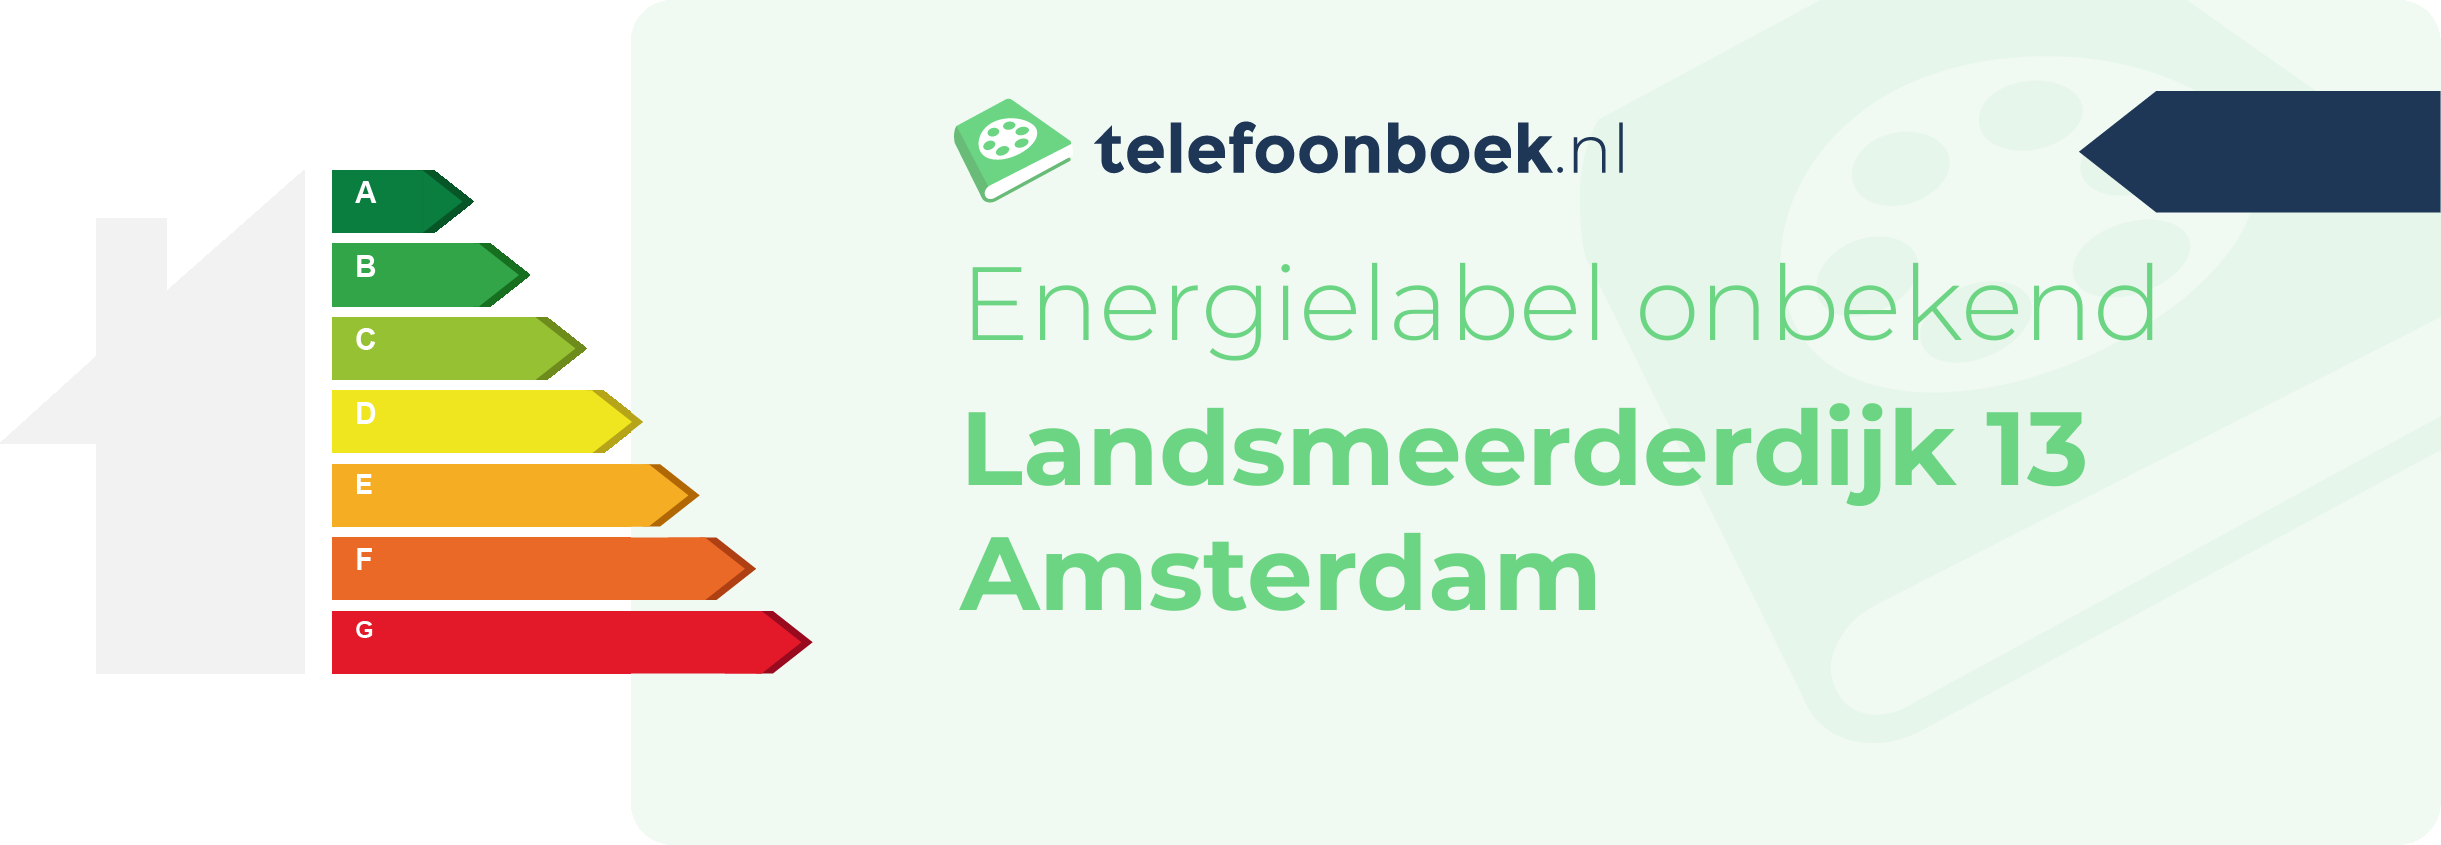 Energielabel Landsmeerderdijk 13 Amsterdam